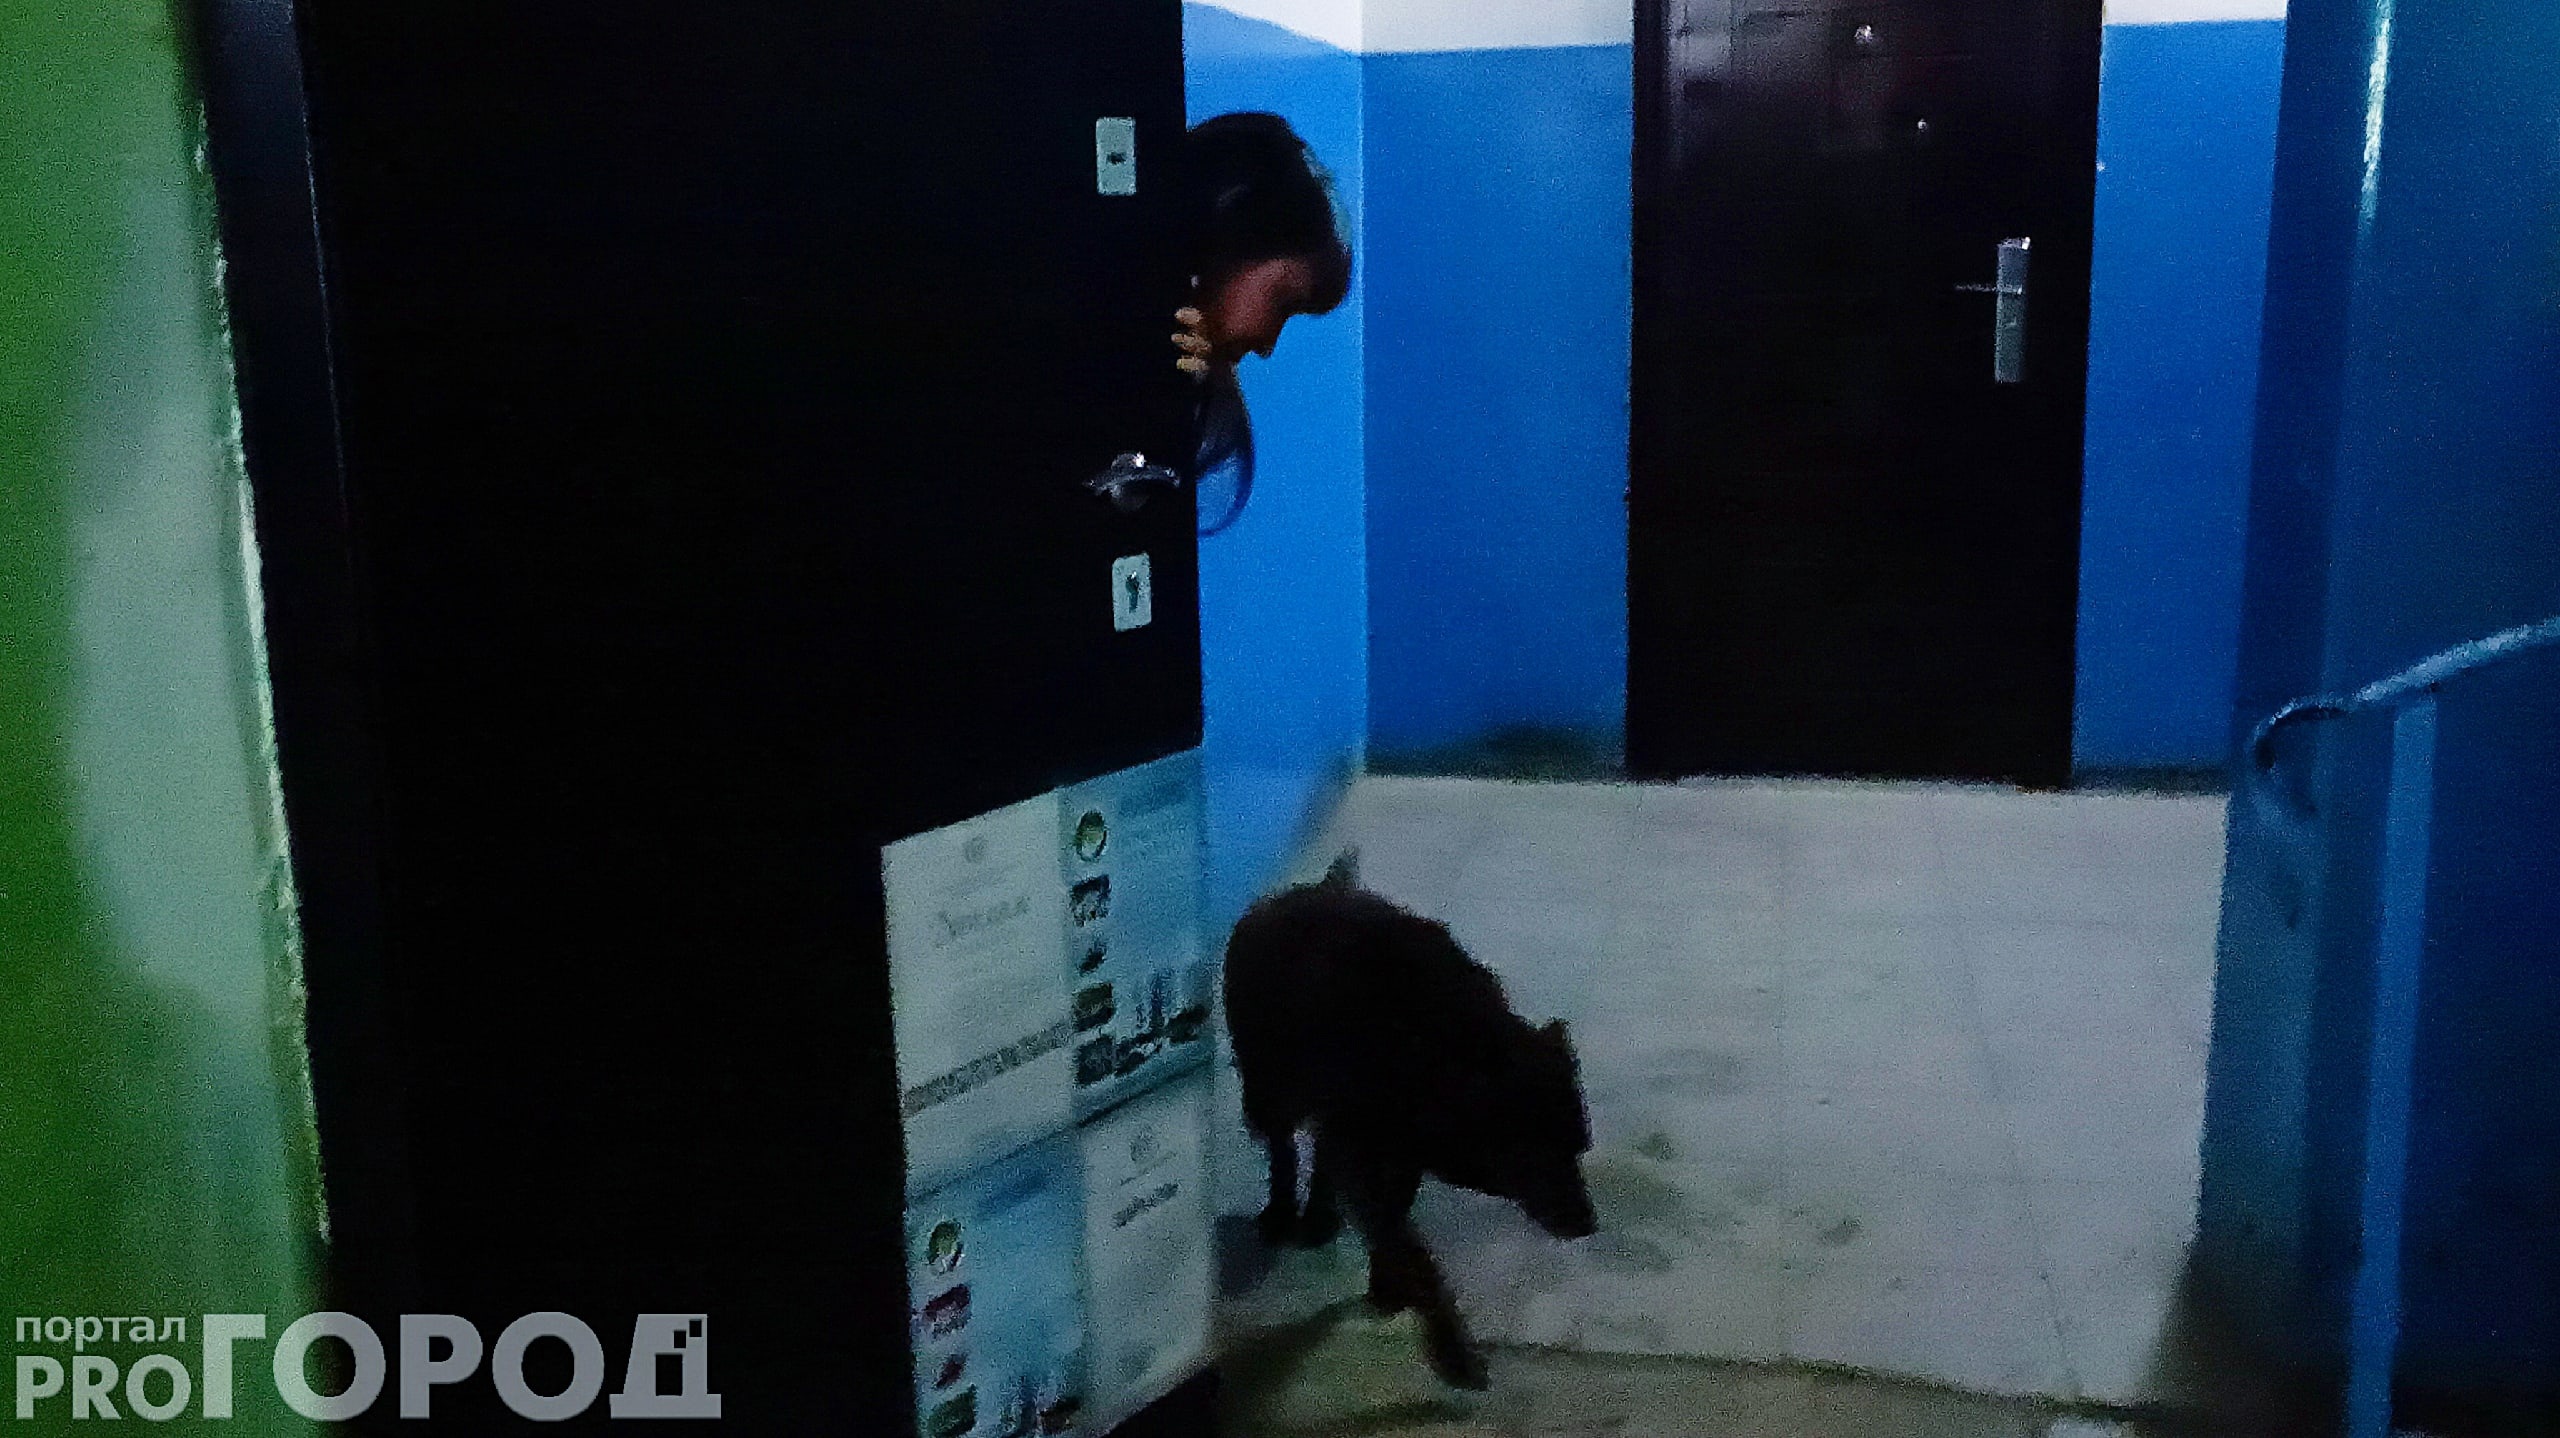 В Чебоксарах собака 10 лет живет в подъезде, но есть противники: “Набрасывается на детей"